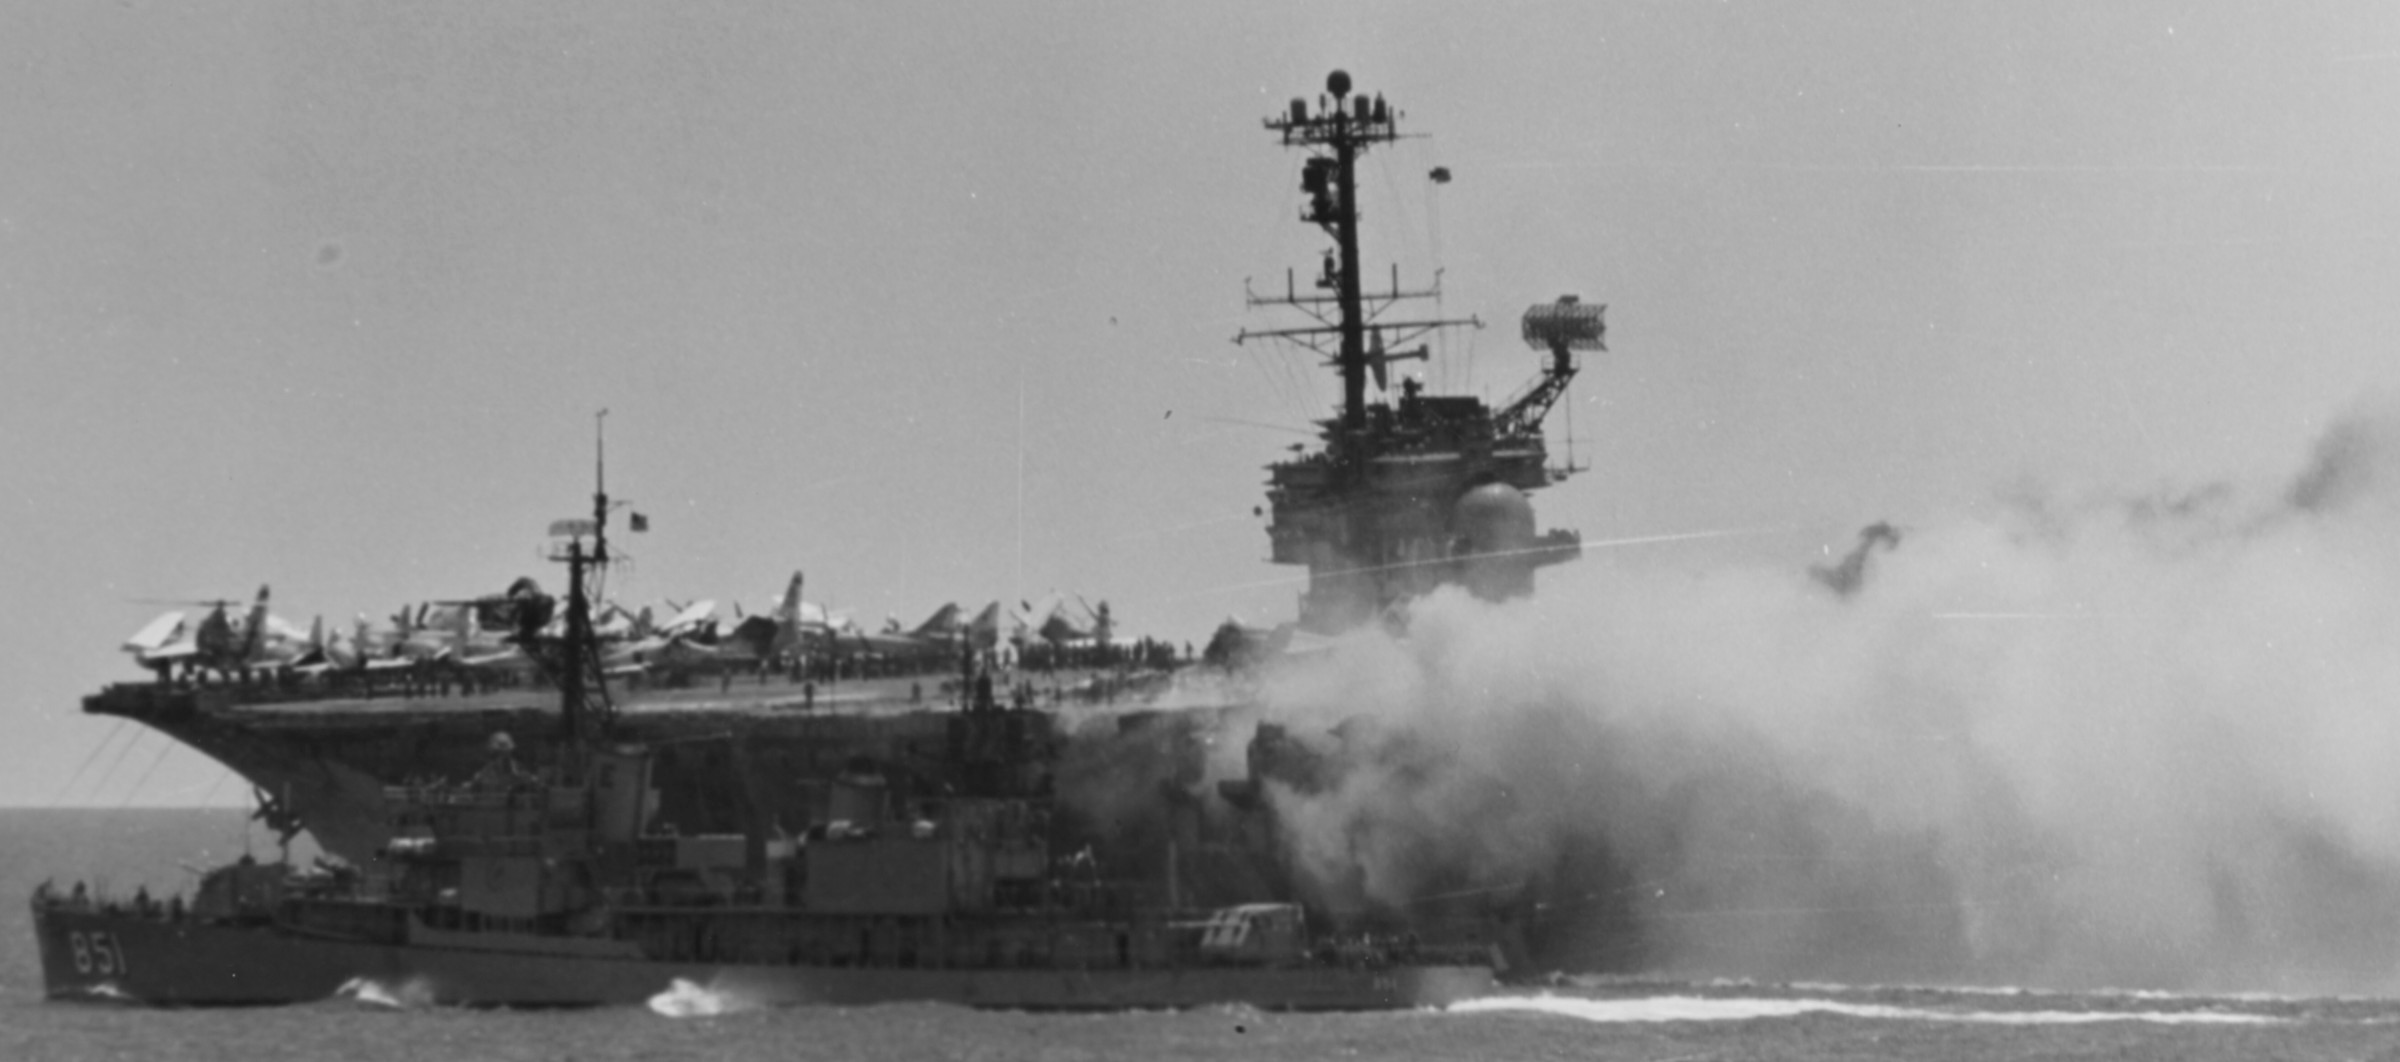 cv-59 uss forrestal aircraft carrier us navy fire damage 1967 zuni rocket 49